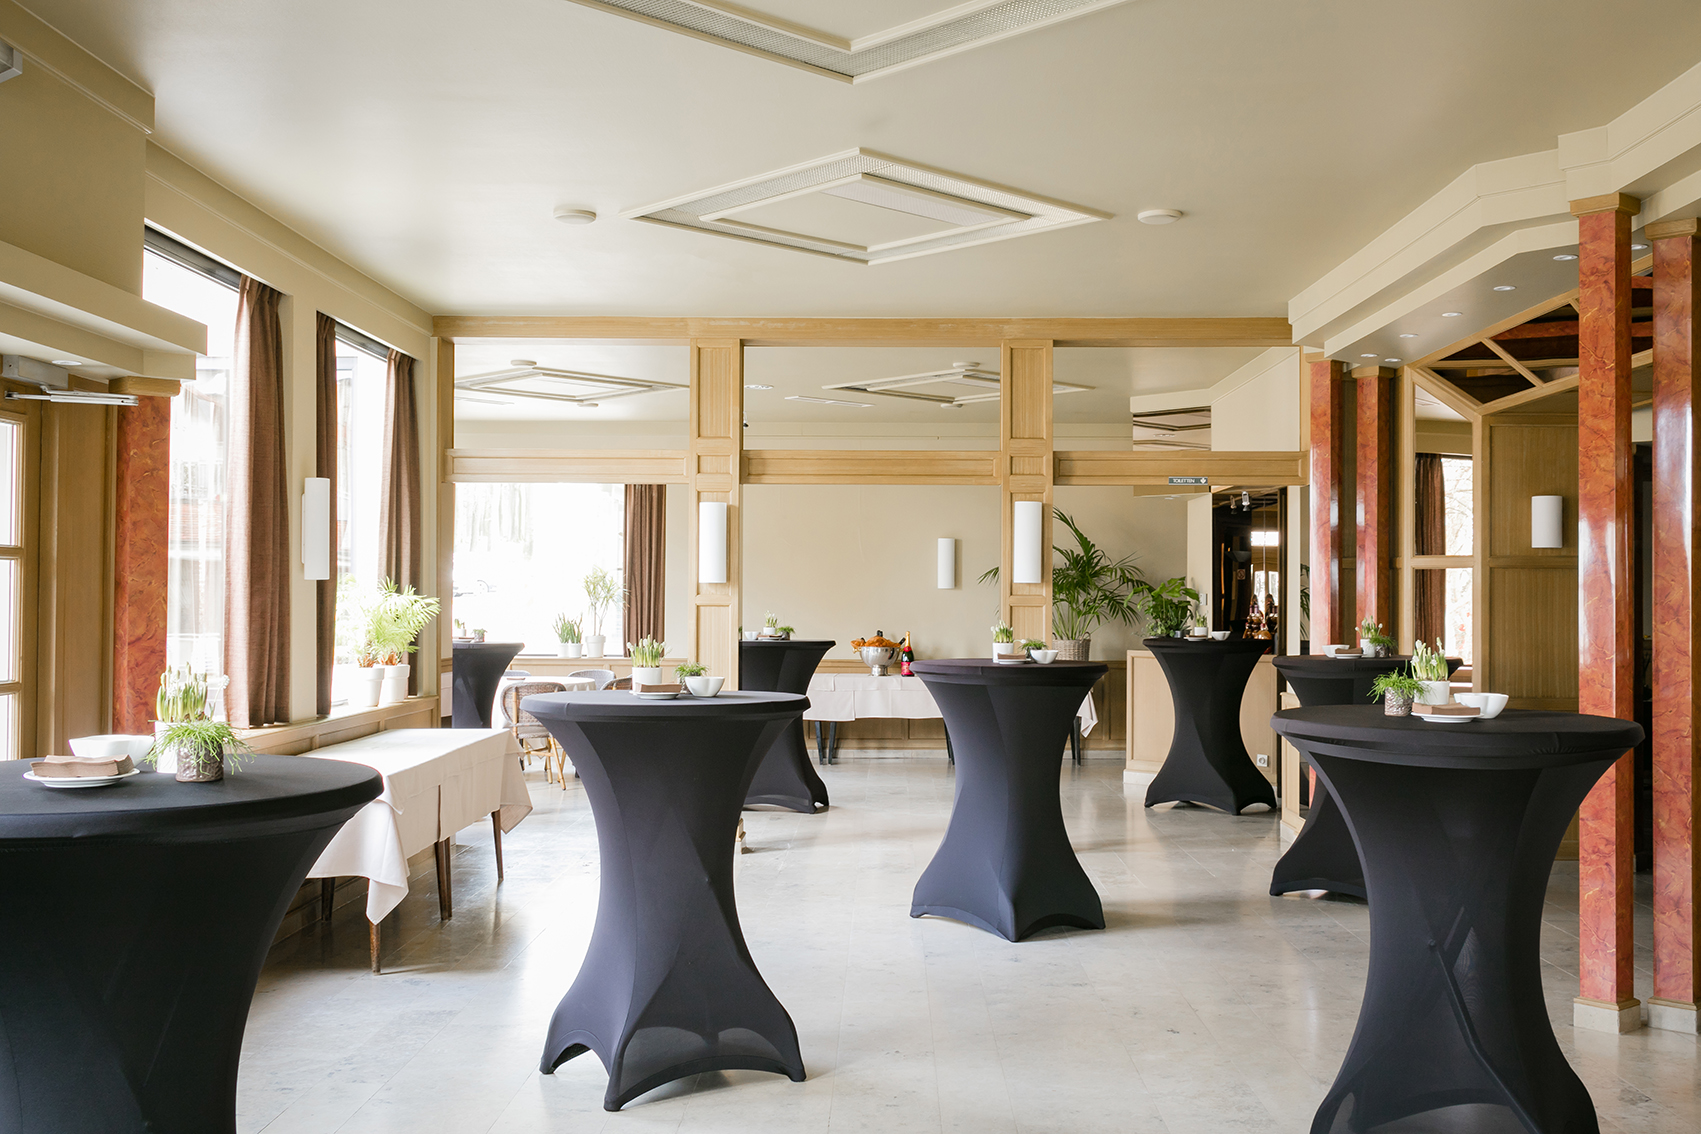 Gasthof Palace Feestzaal Gastronomie Restaurant Tearoom Kluisberg | Salles des fêtes Mont de l'Enclus